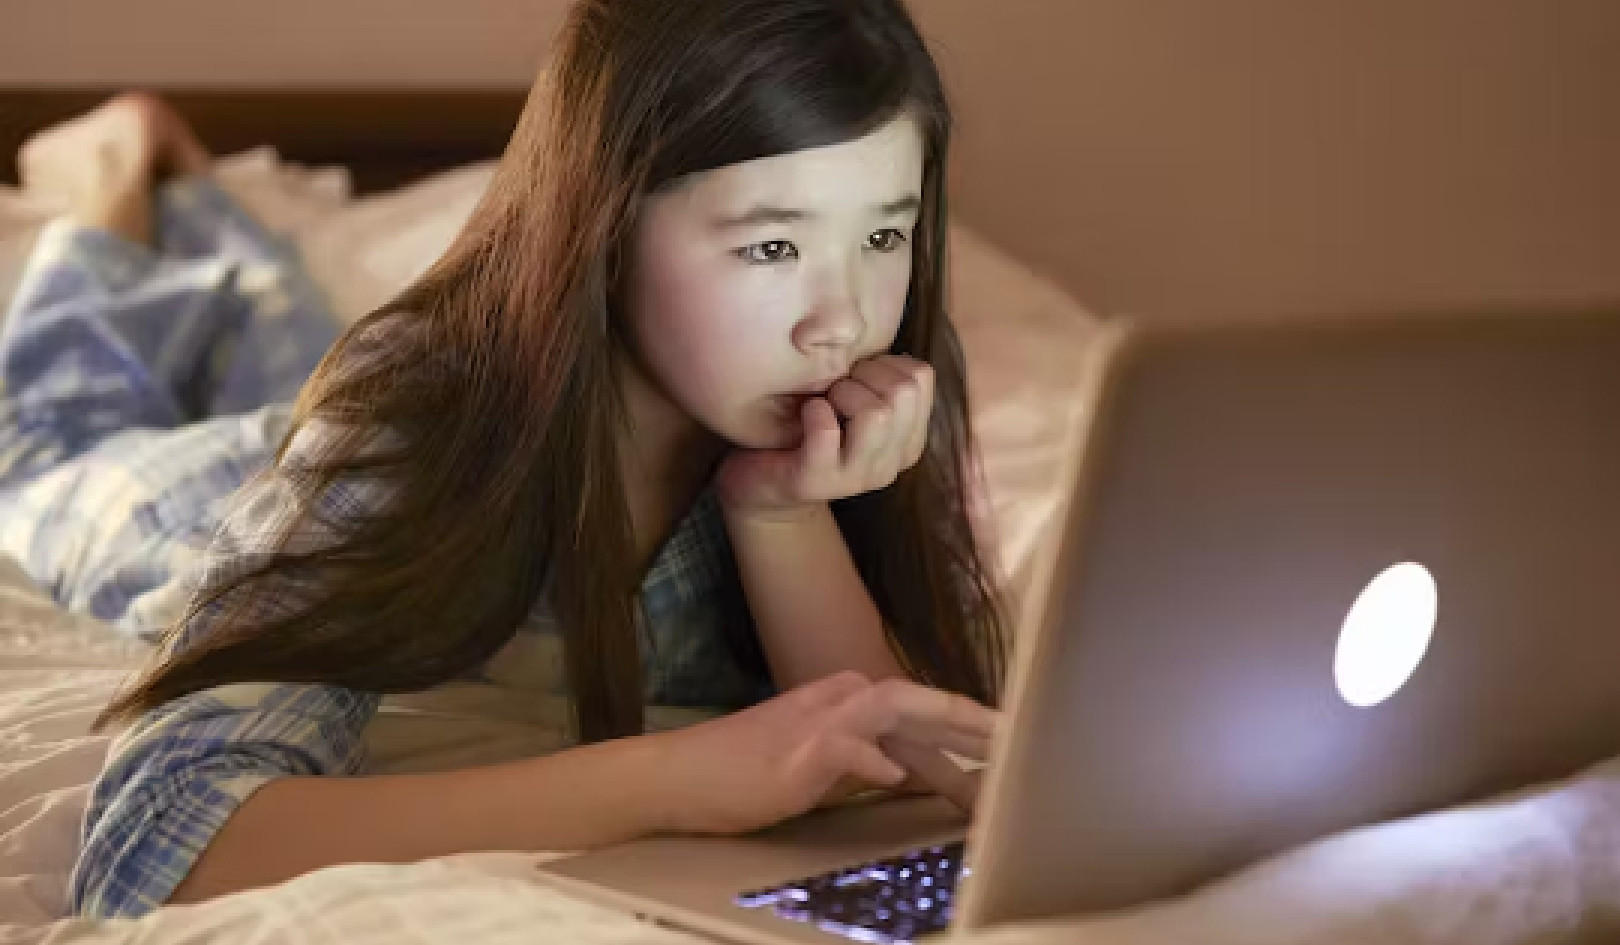 Børns webkameraer bliver målrettet af online rovdyr